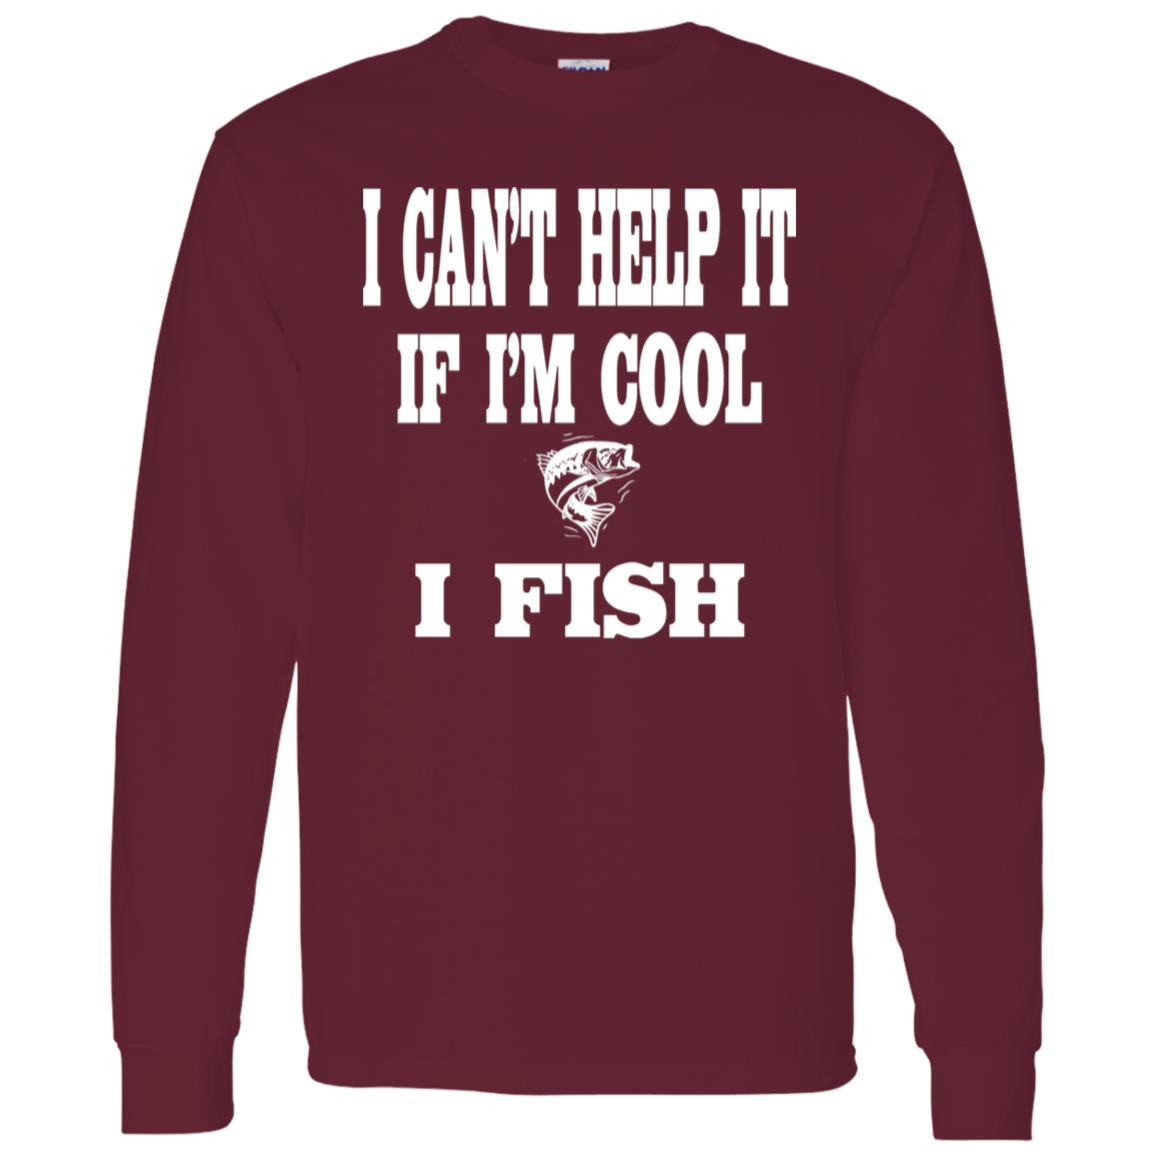 I can't help it if i'm cool i fish ls t-shirt maroon